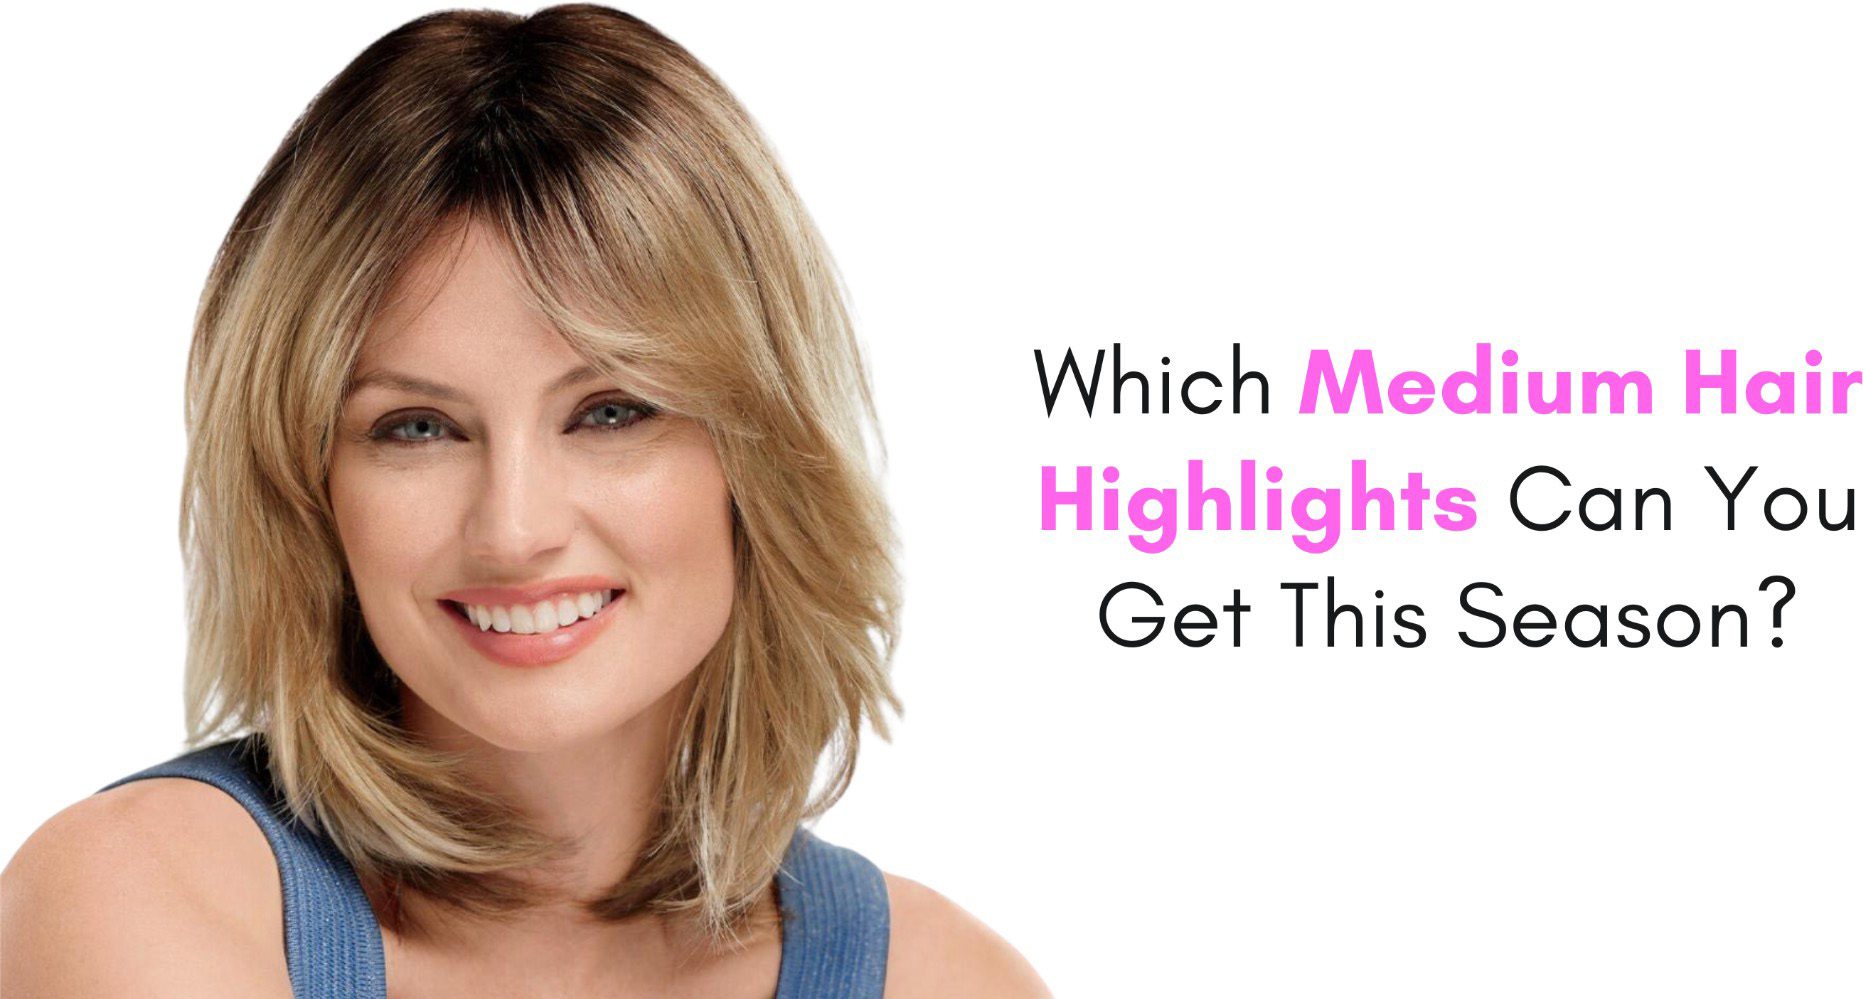 Which Medium Hair Highlights Can You Get This Season?